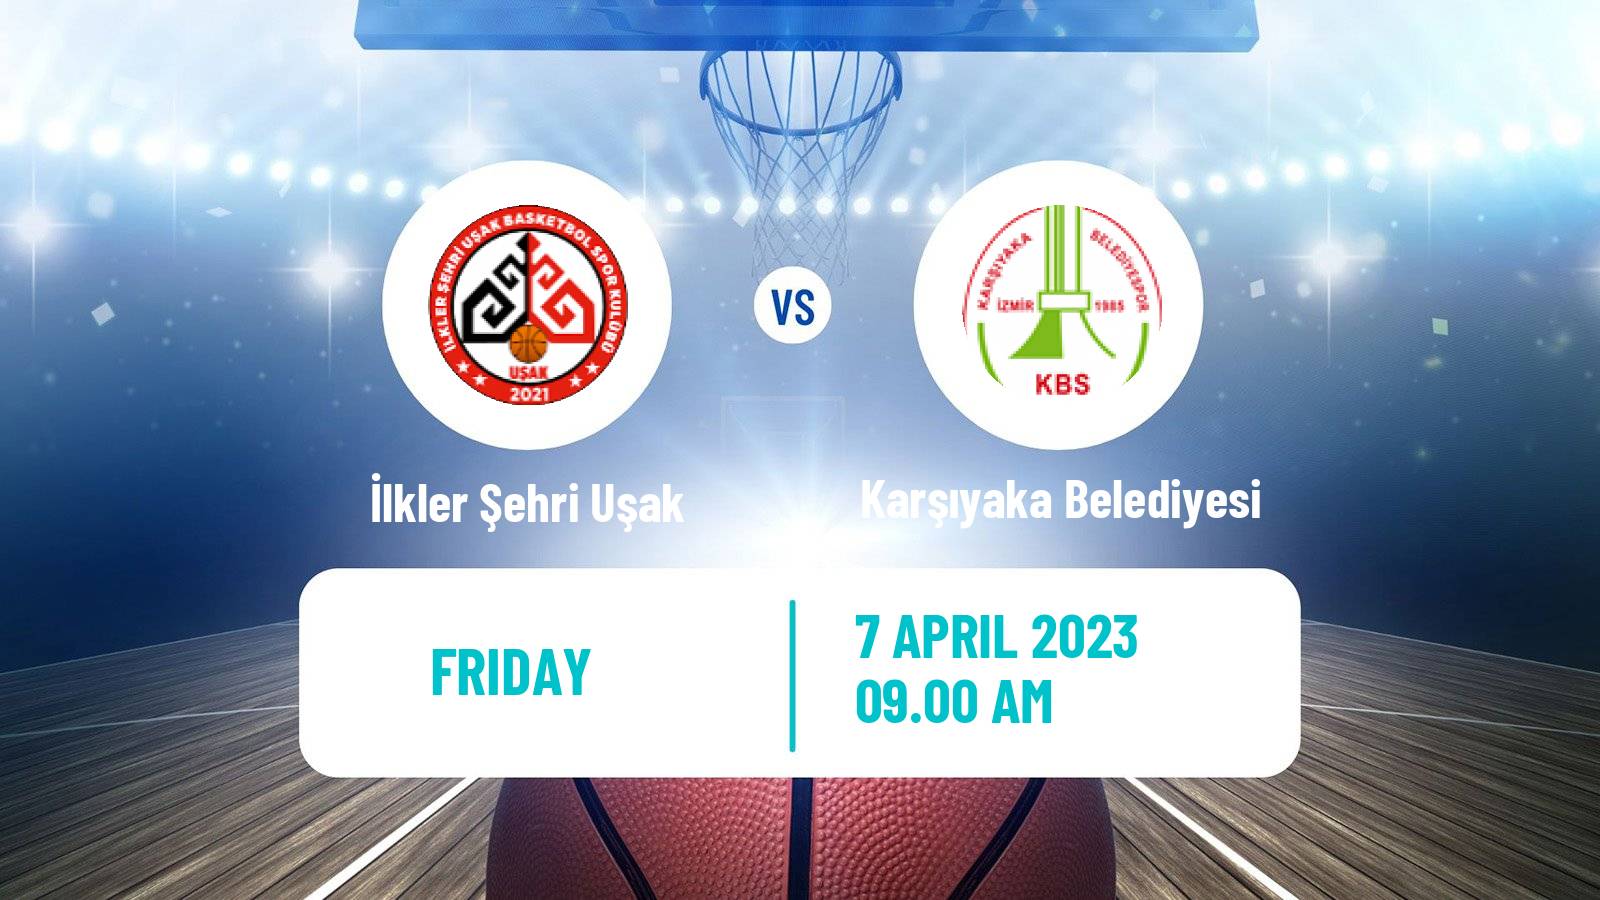 Basketball Turkish TB2L İlkler Şehri Uşak - Karşıyaka Belediyesi